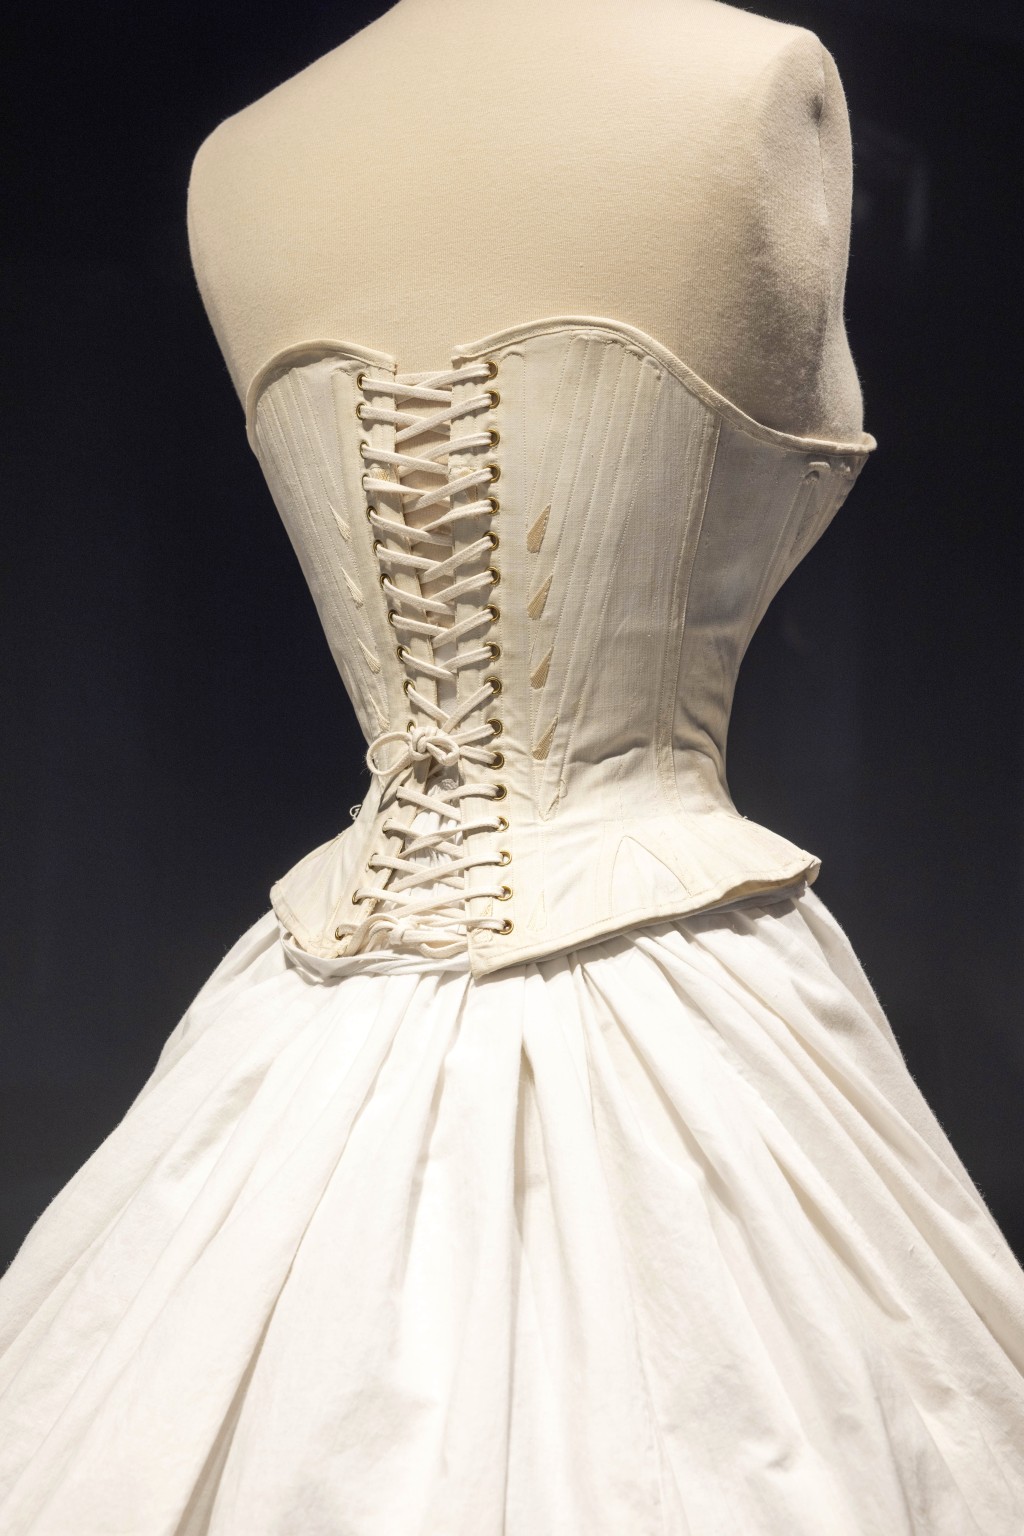 無論是束腰胸衣，還是外形如鳥籠的硬身裙撐，都是十八、十九世紀貴族女性 展示體態與身份的衣着象徵。